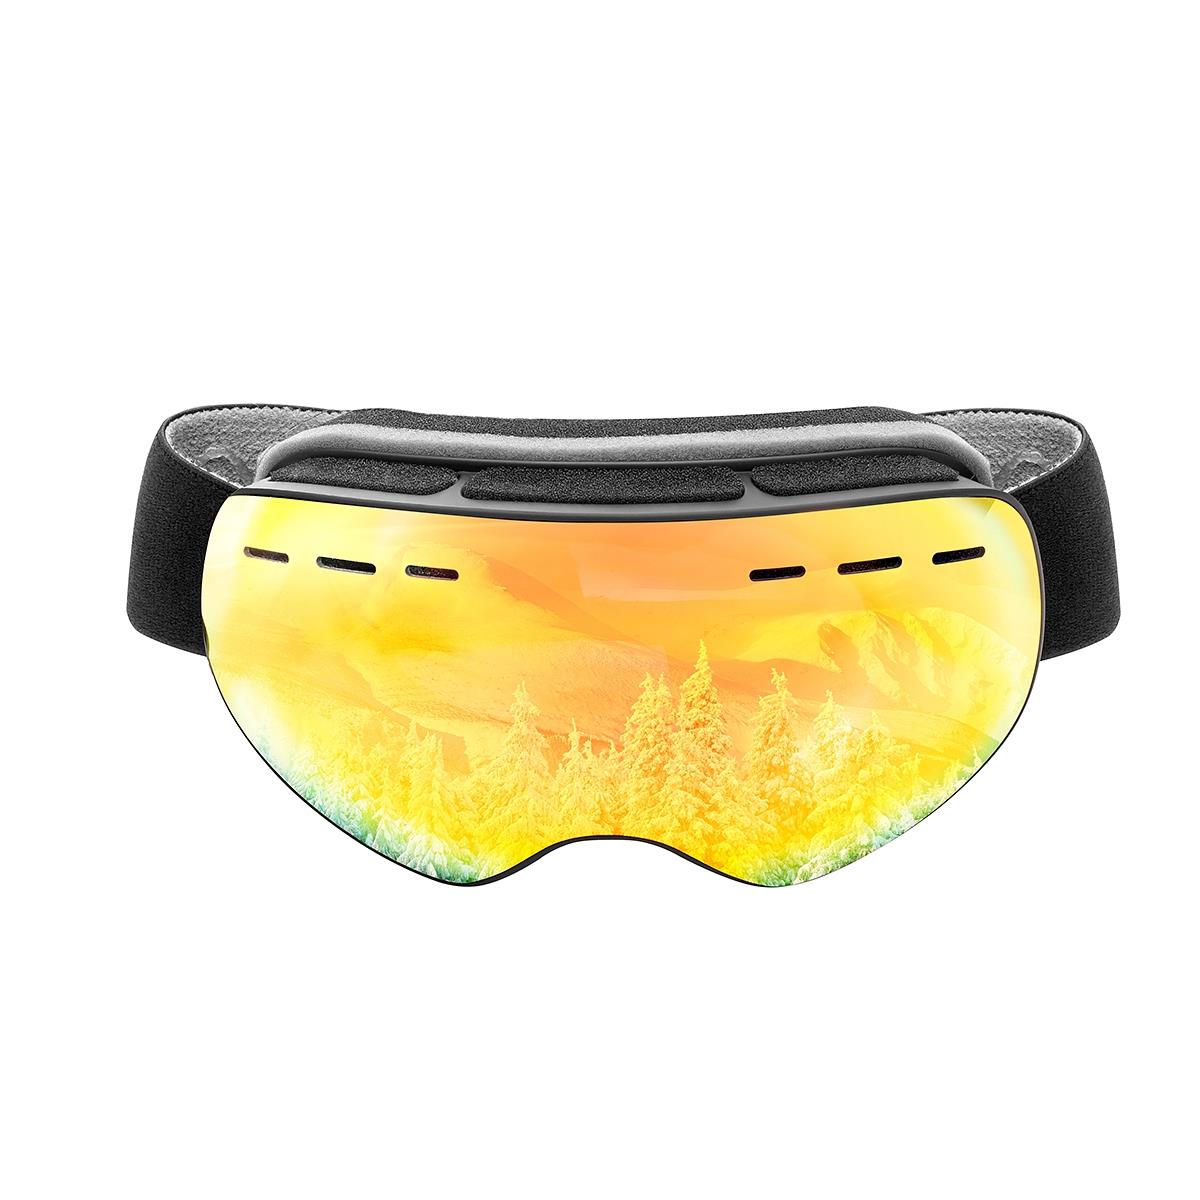 Очки горнолыжные HS-HX-029 Helios очки полумаска для плавания с берушами детские uv защита